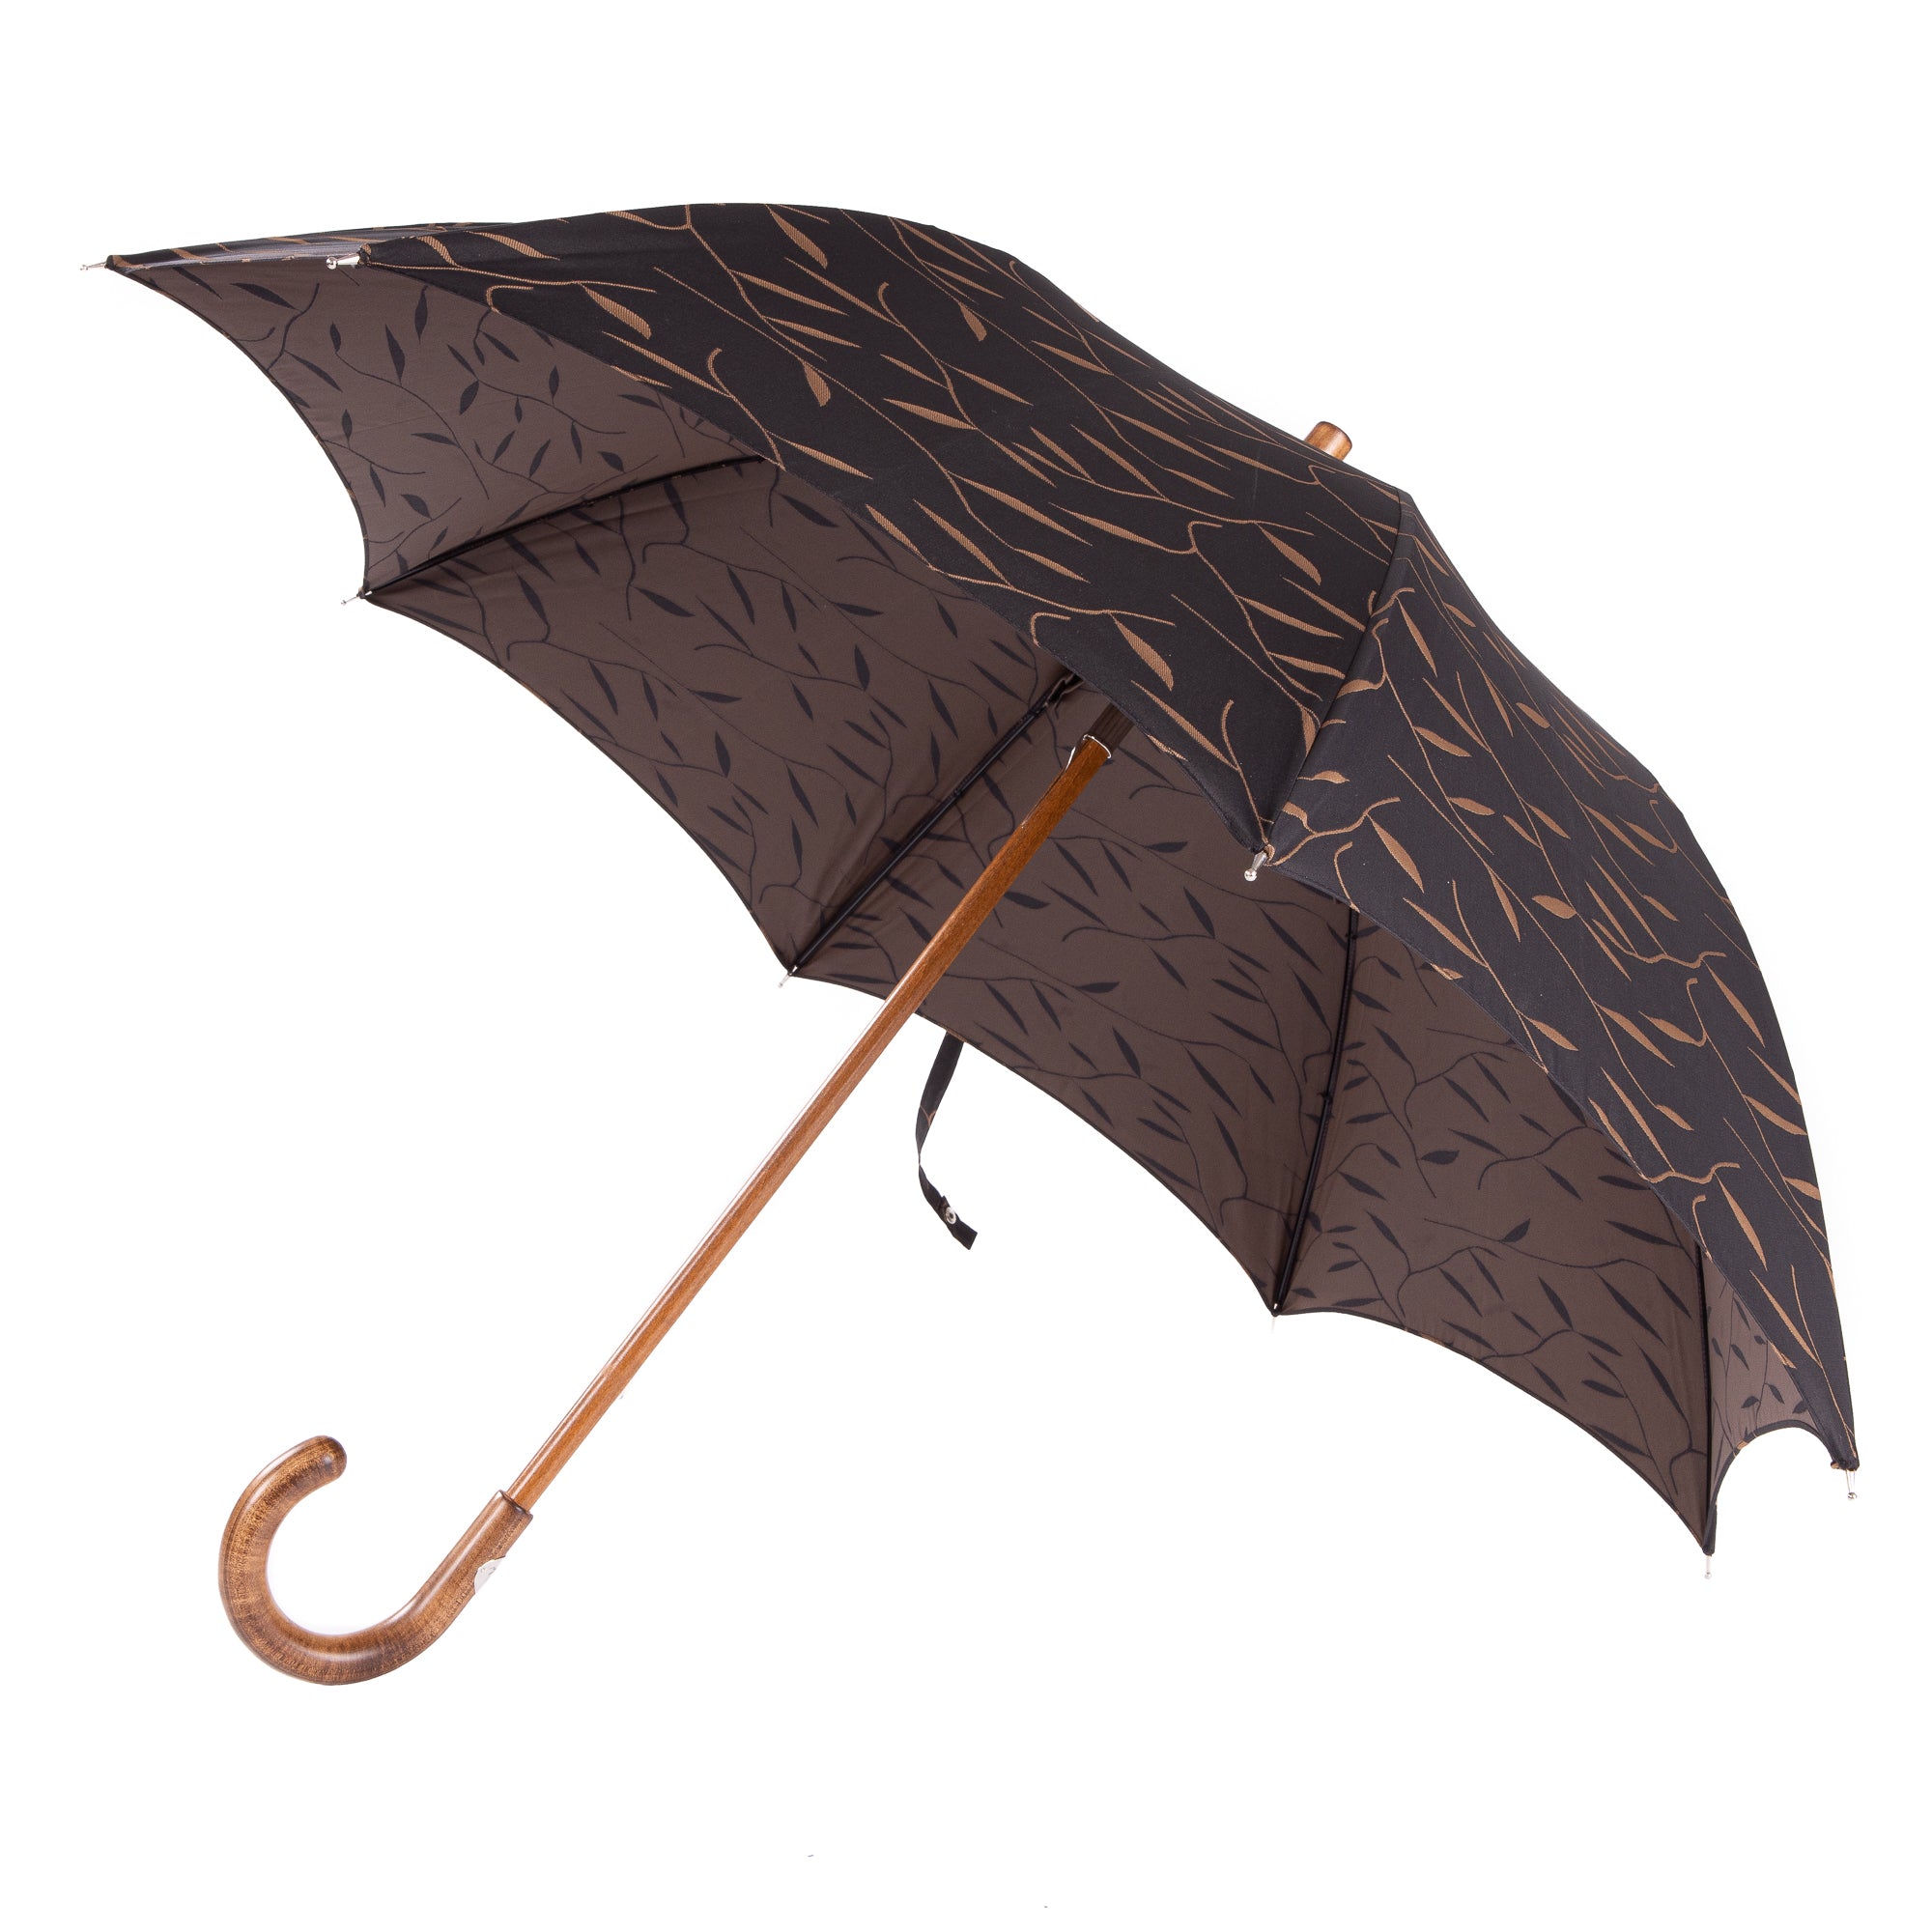 Tampus Umbrella with Maple Handle